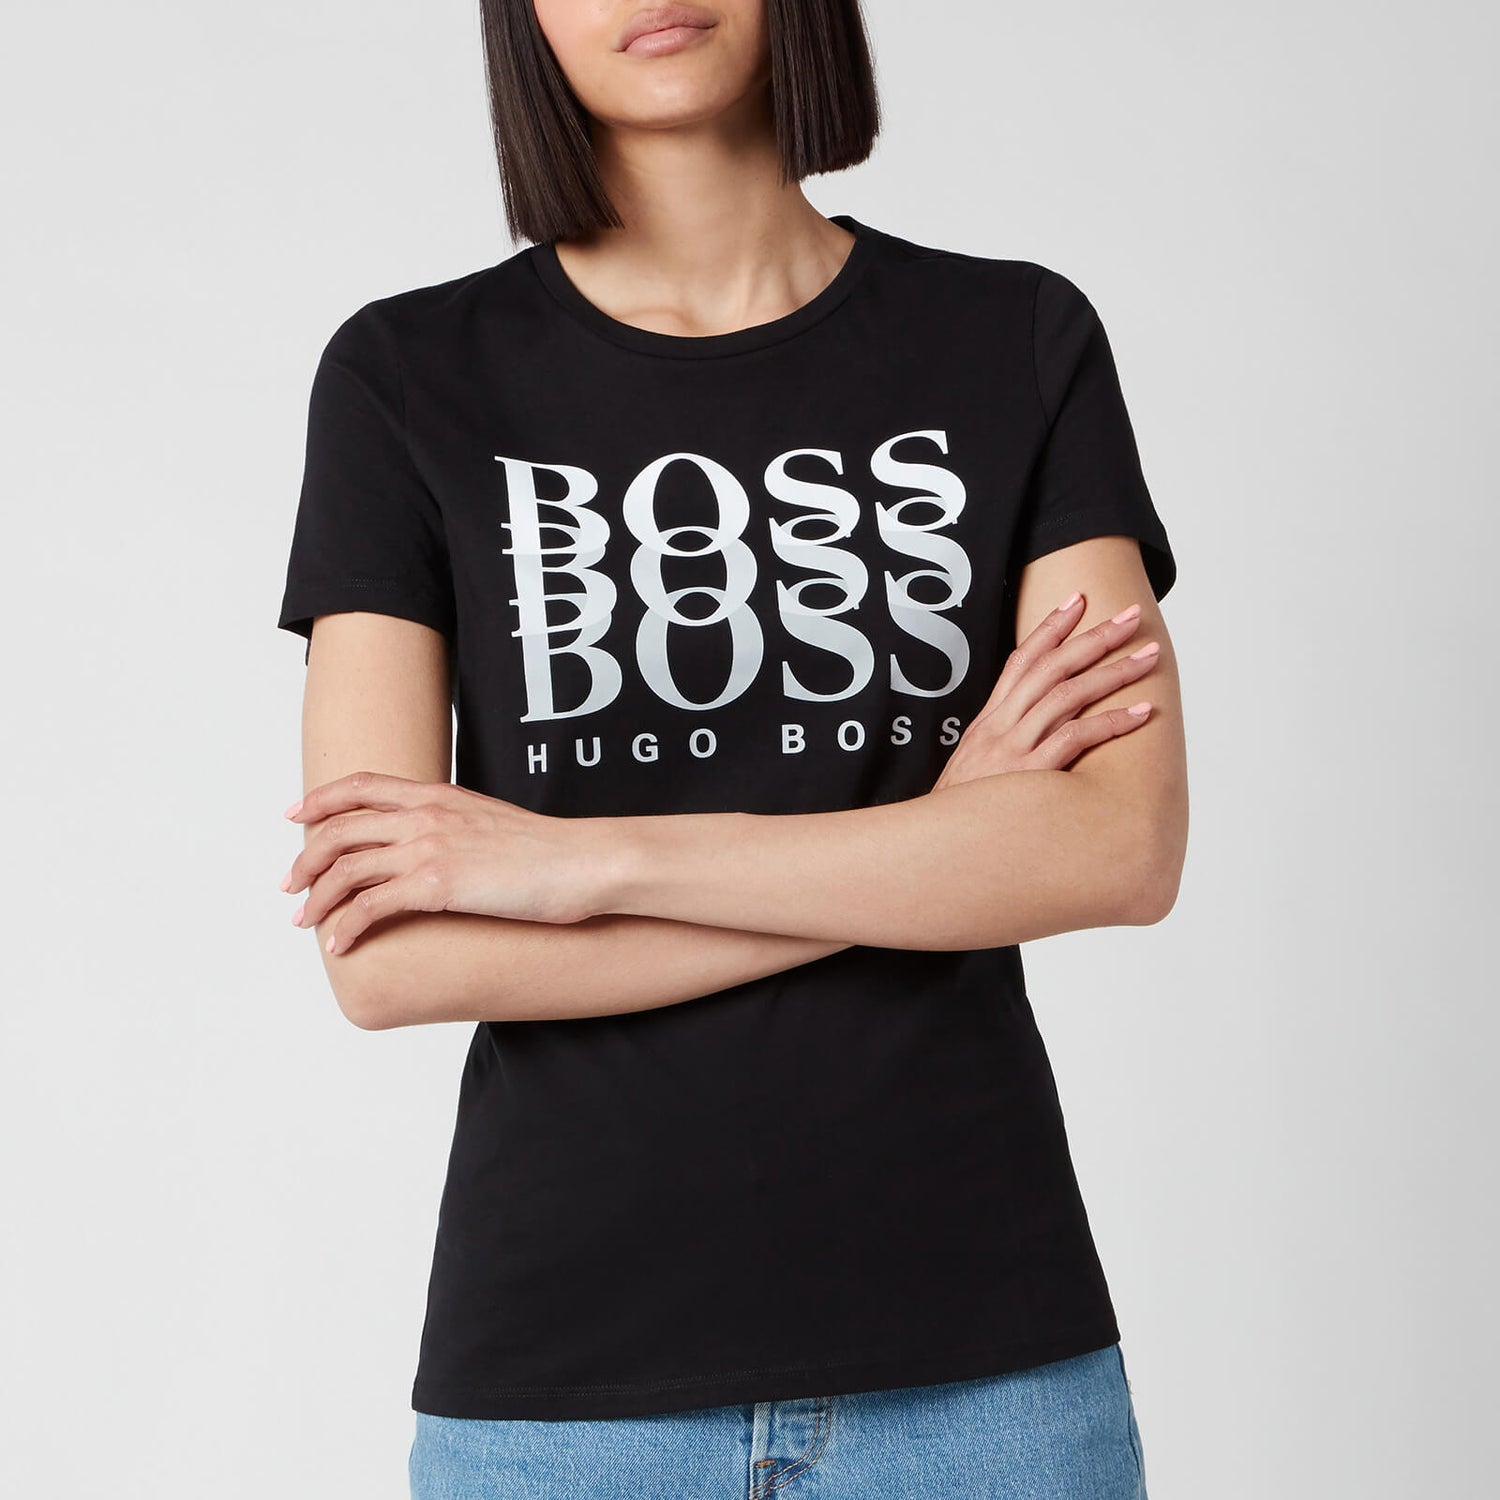 BOSS Women's Eloga1 T-Shirt - Black